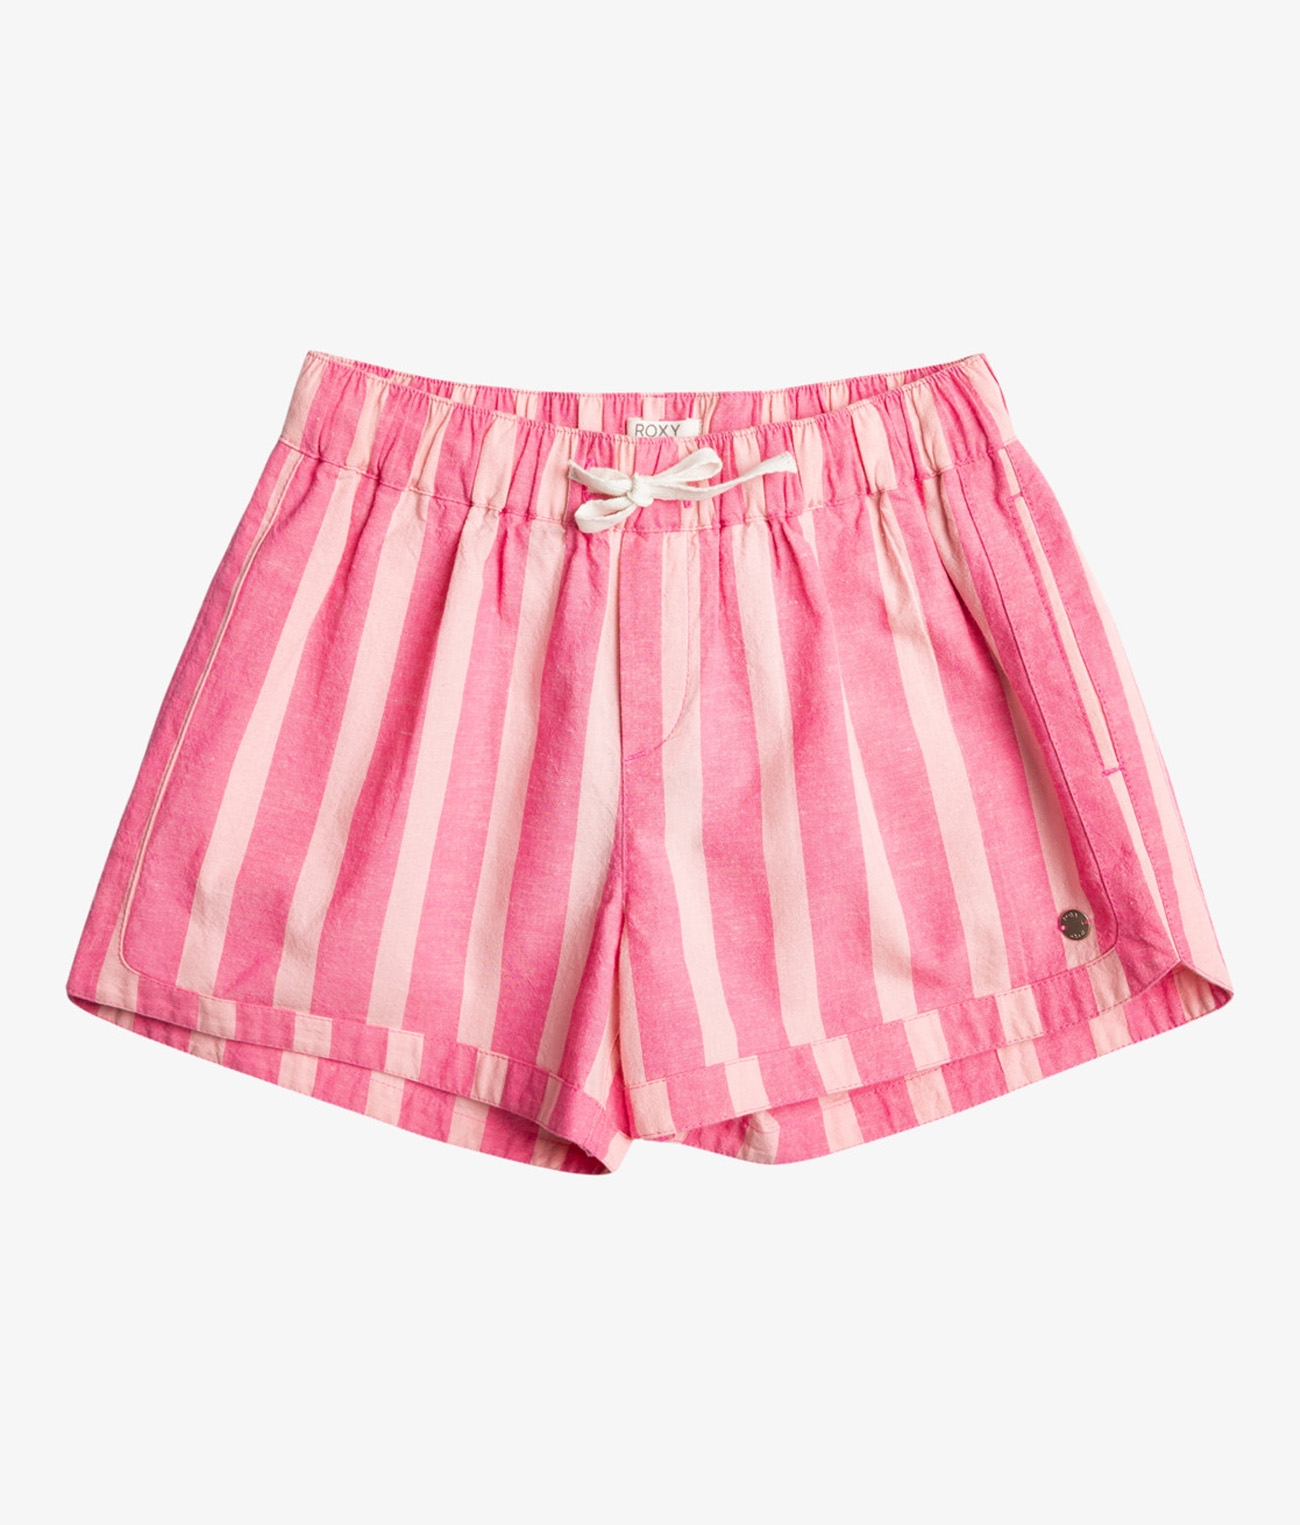 Una Mattina Beach Shorts For Girls